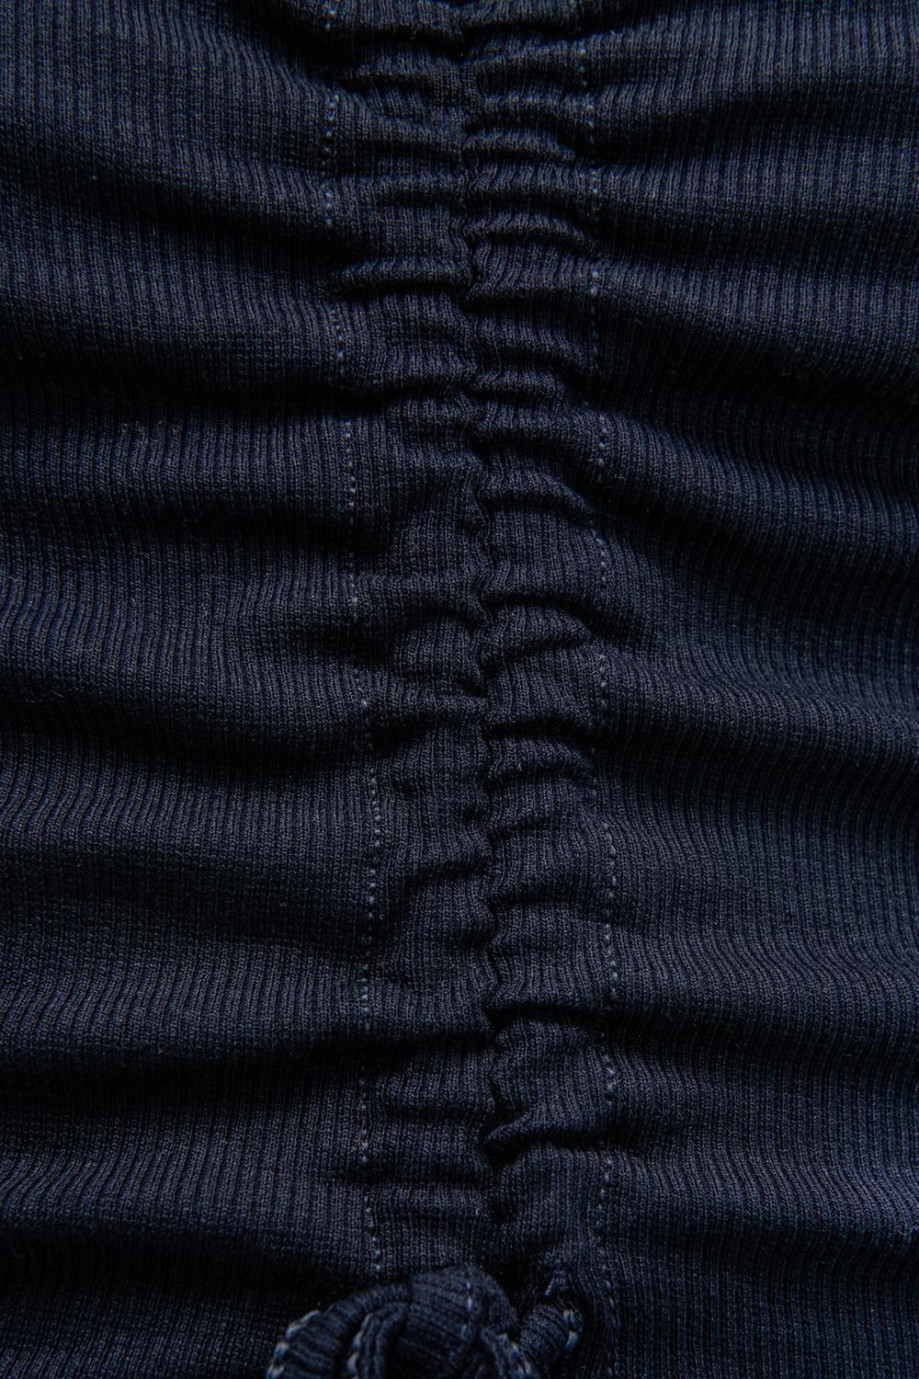 Camiseta manga larga sin estampar, con túnel y cordón para recogido en el frente.